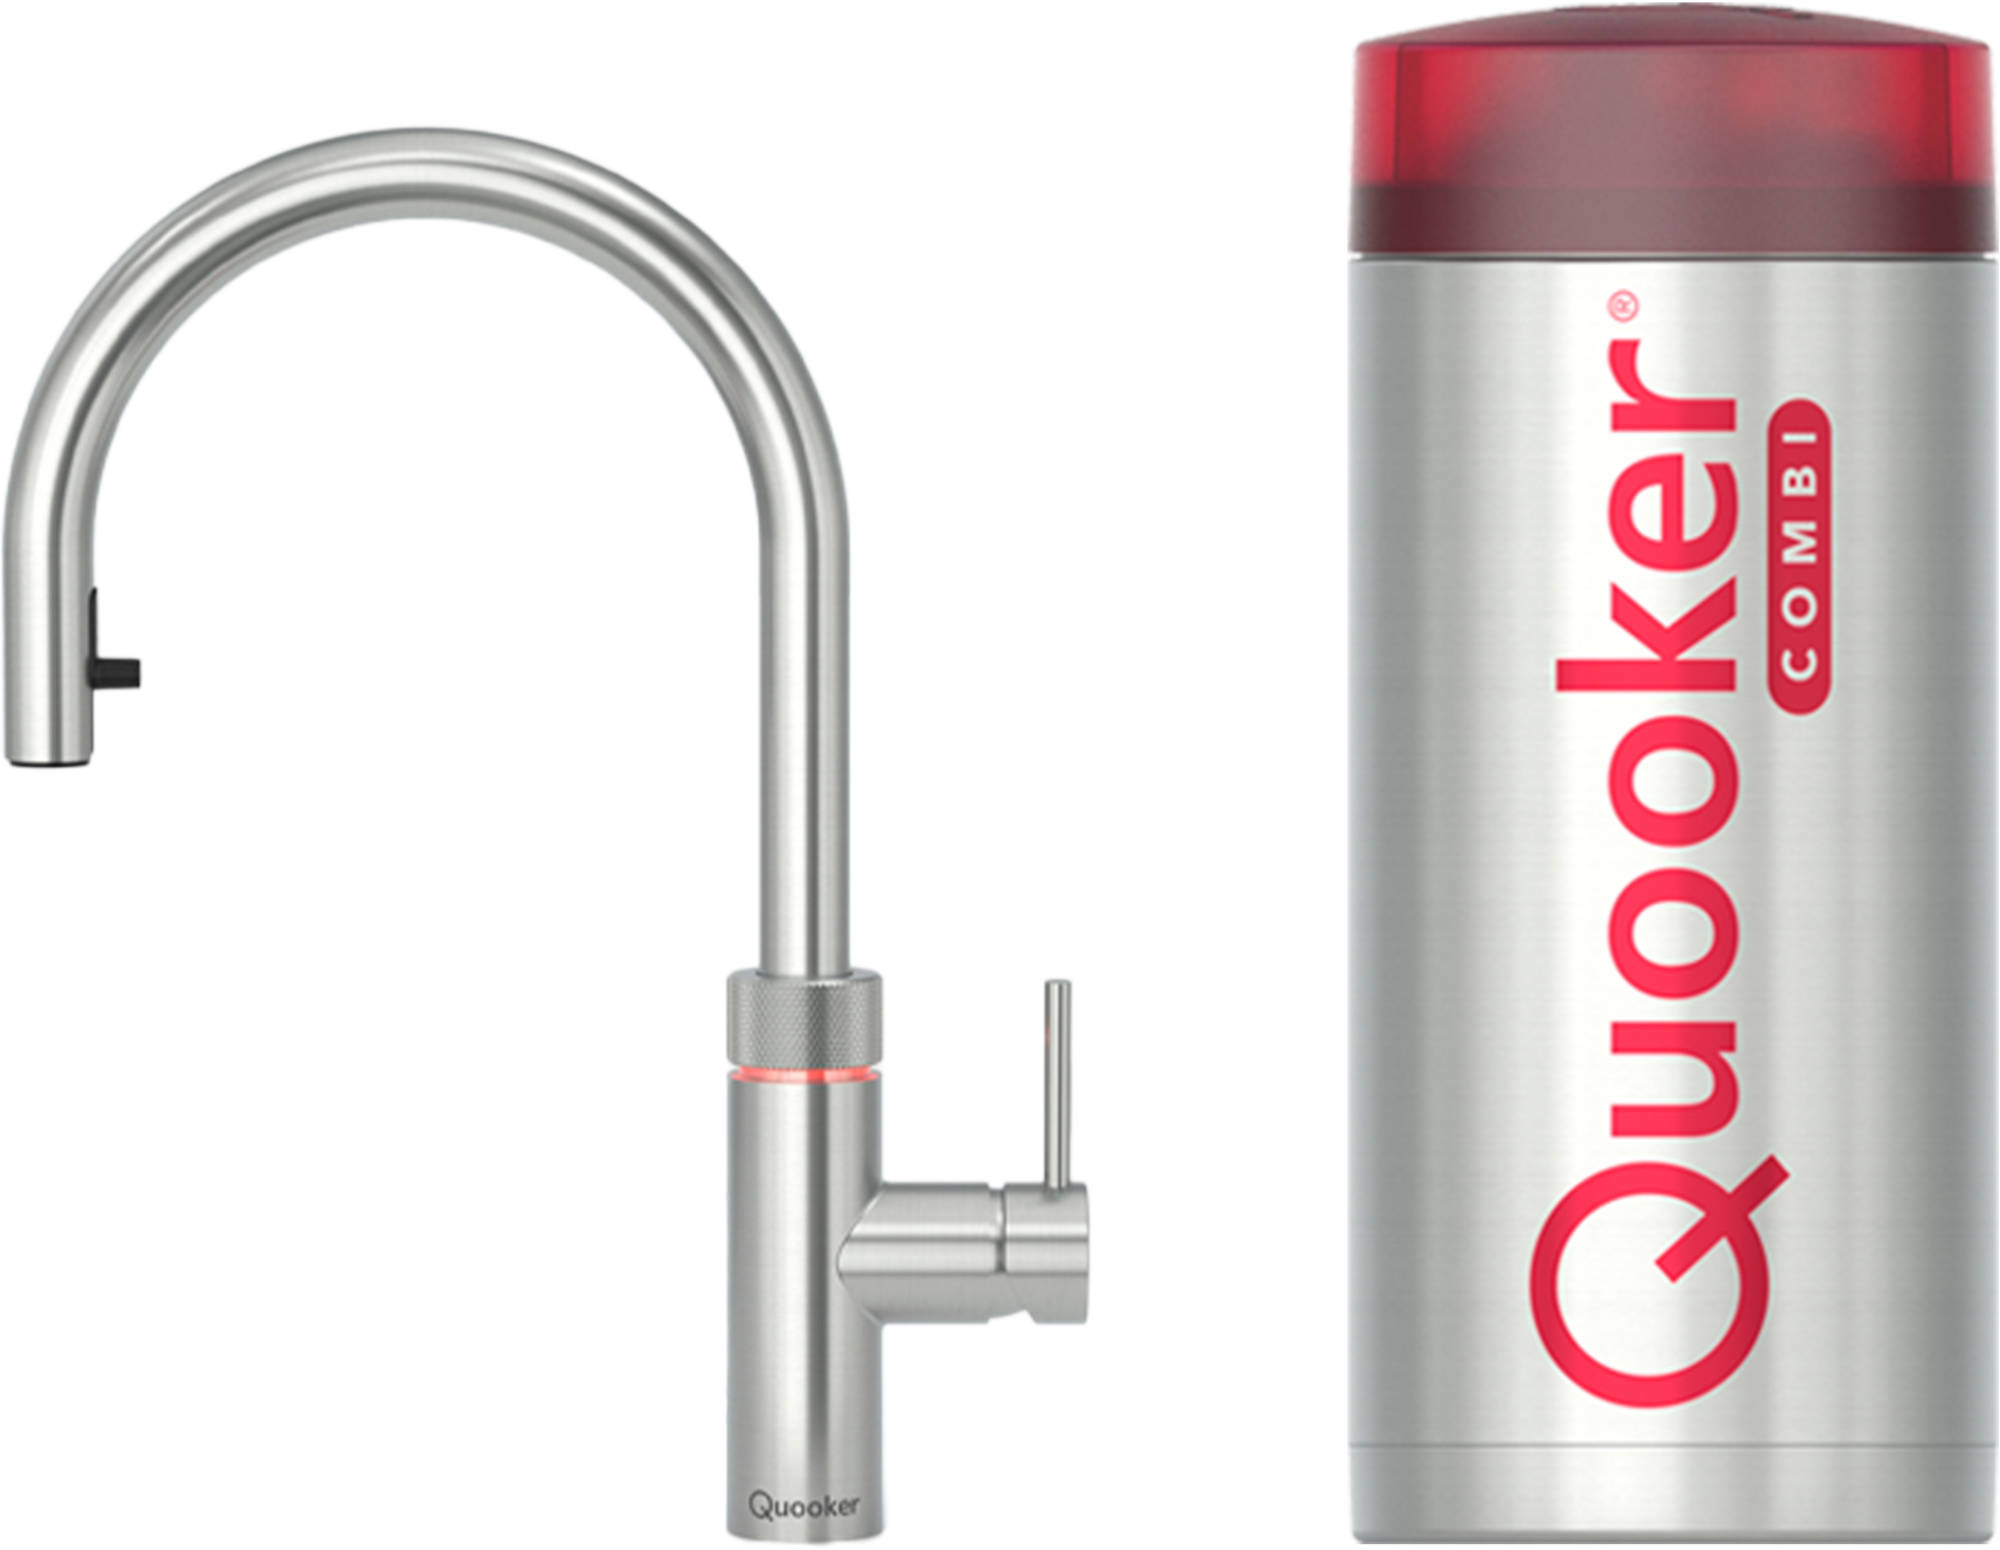 Quooker Flex met COMBI boiler 3-in-1 kokend water kraan RVS